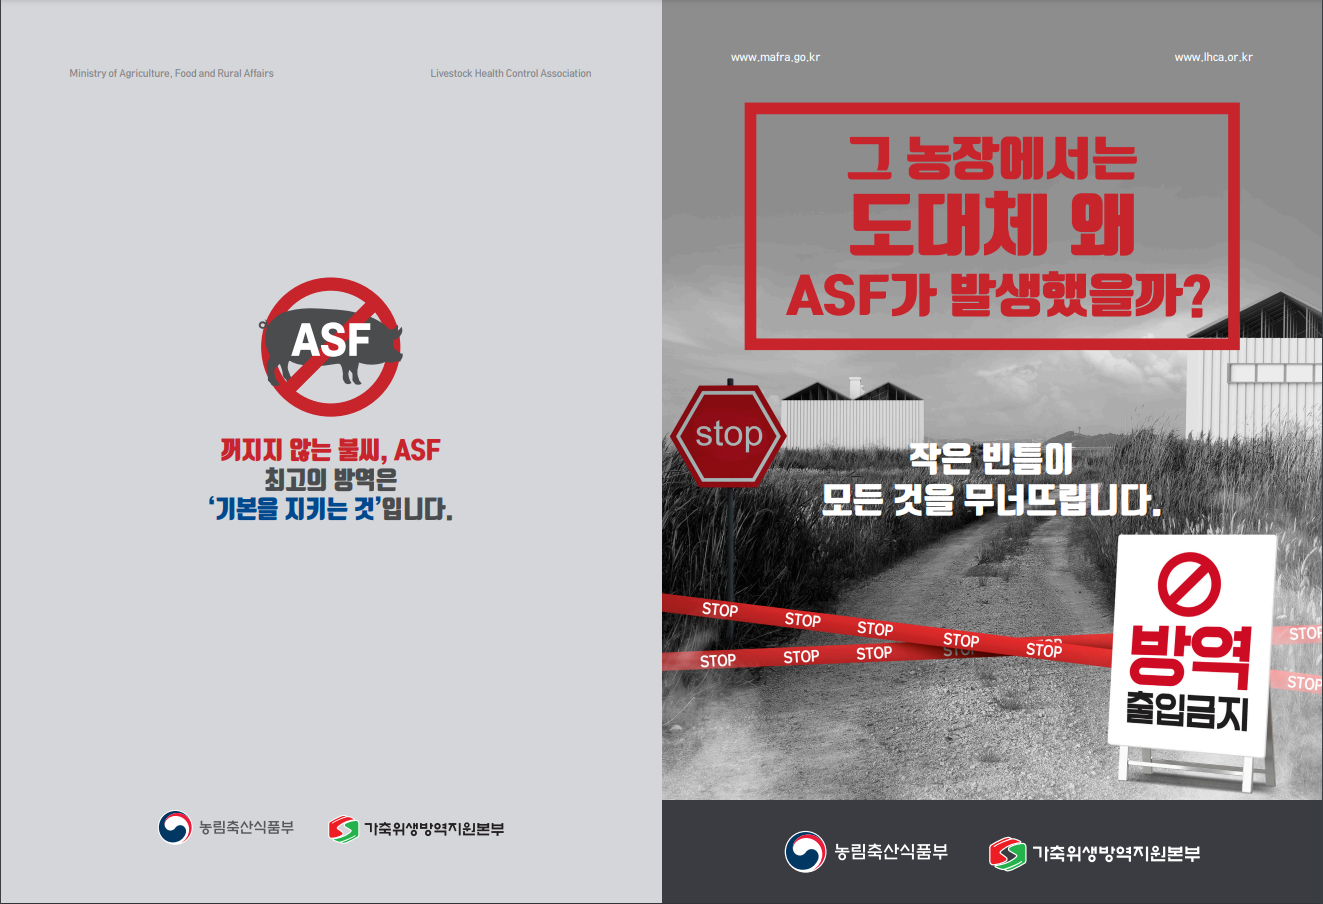 ASF 발생농장 미흡사례 및 방역수칙 홍보 리플렛 1-1.png